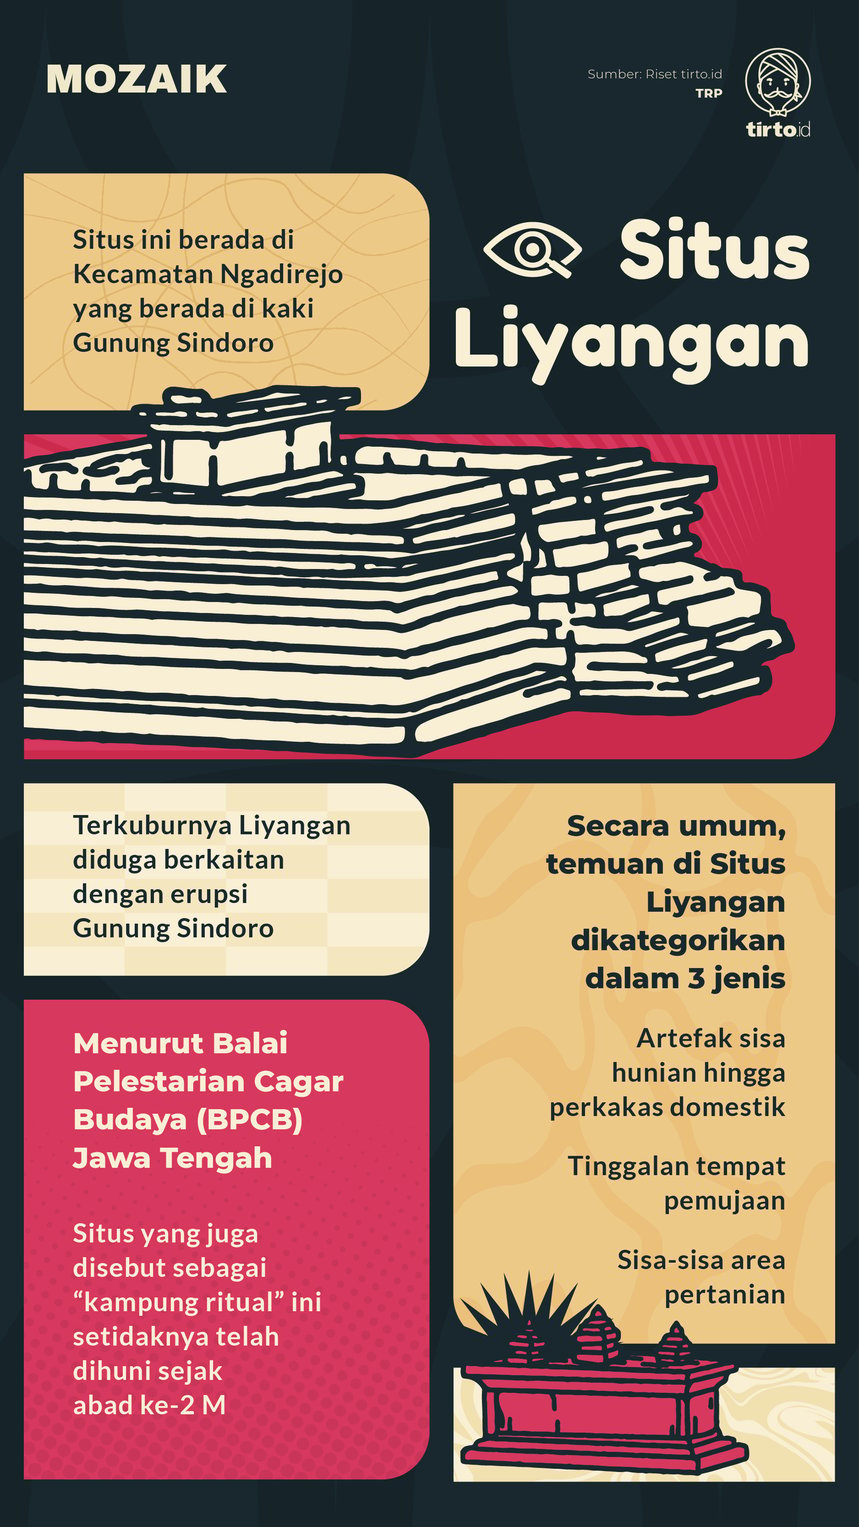 Infografik Mozaik Situs Liyangan